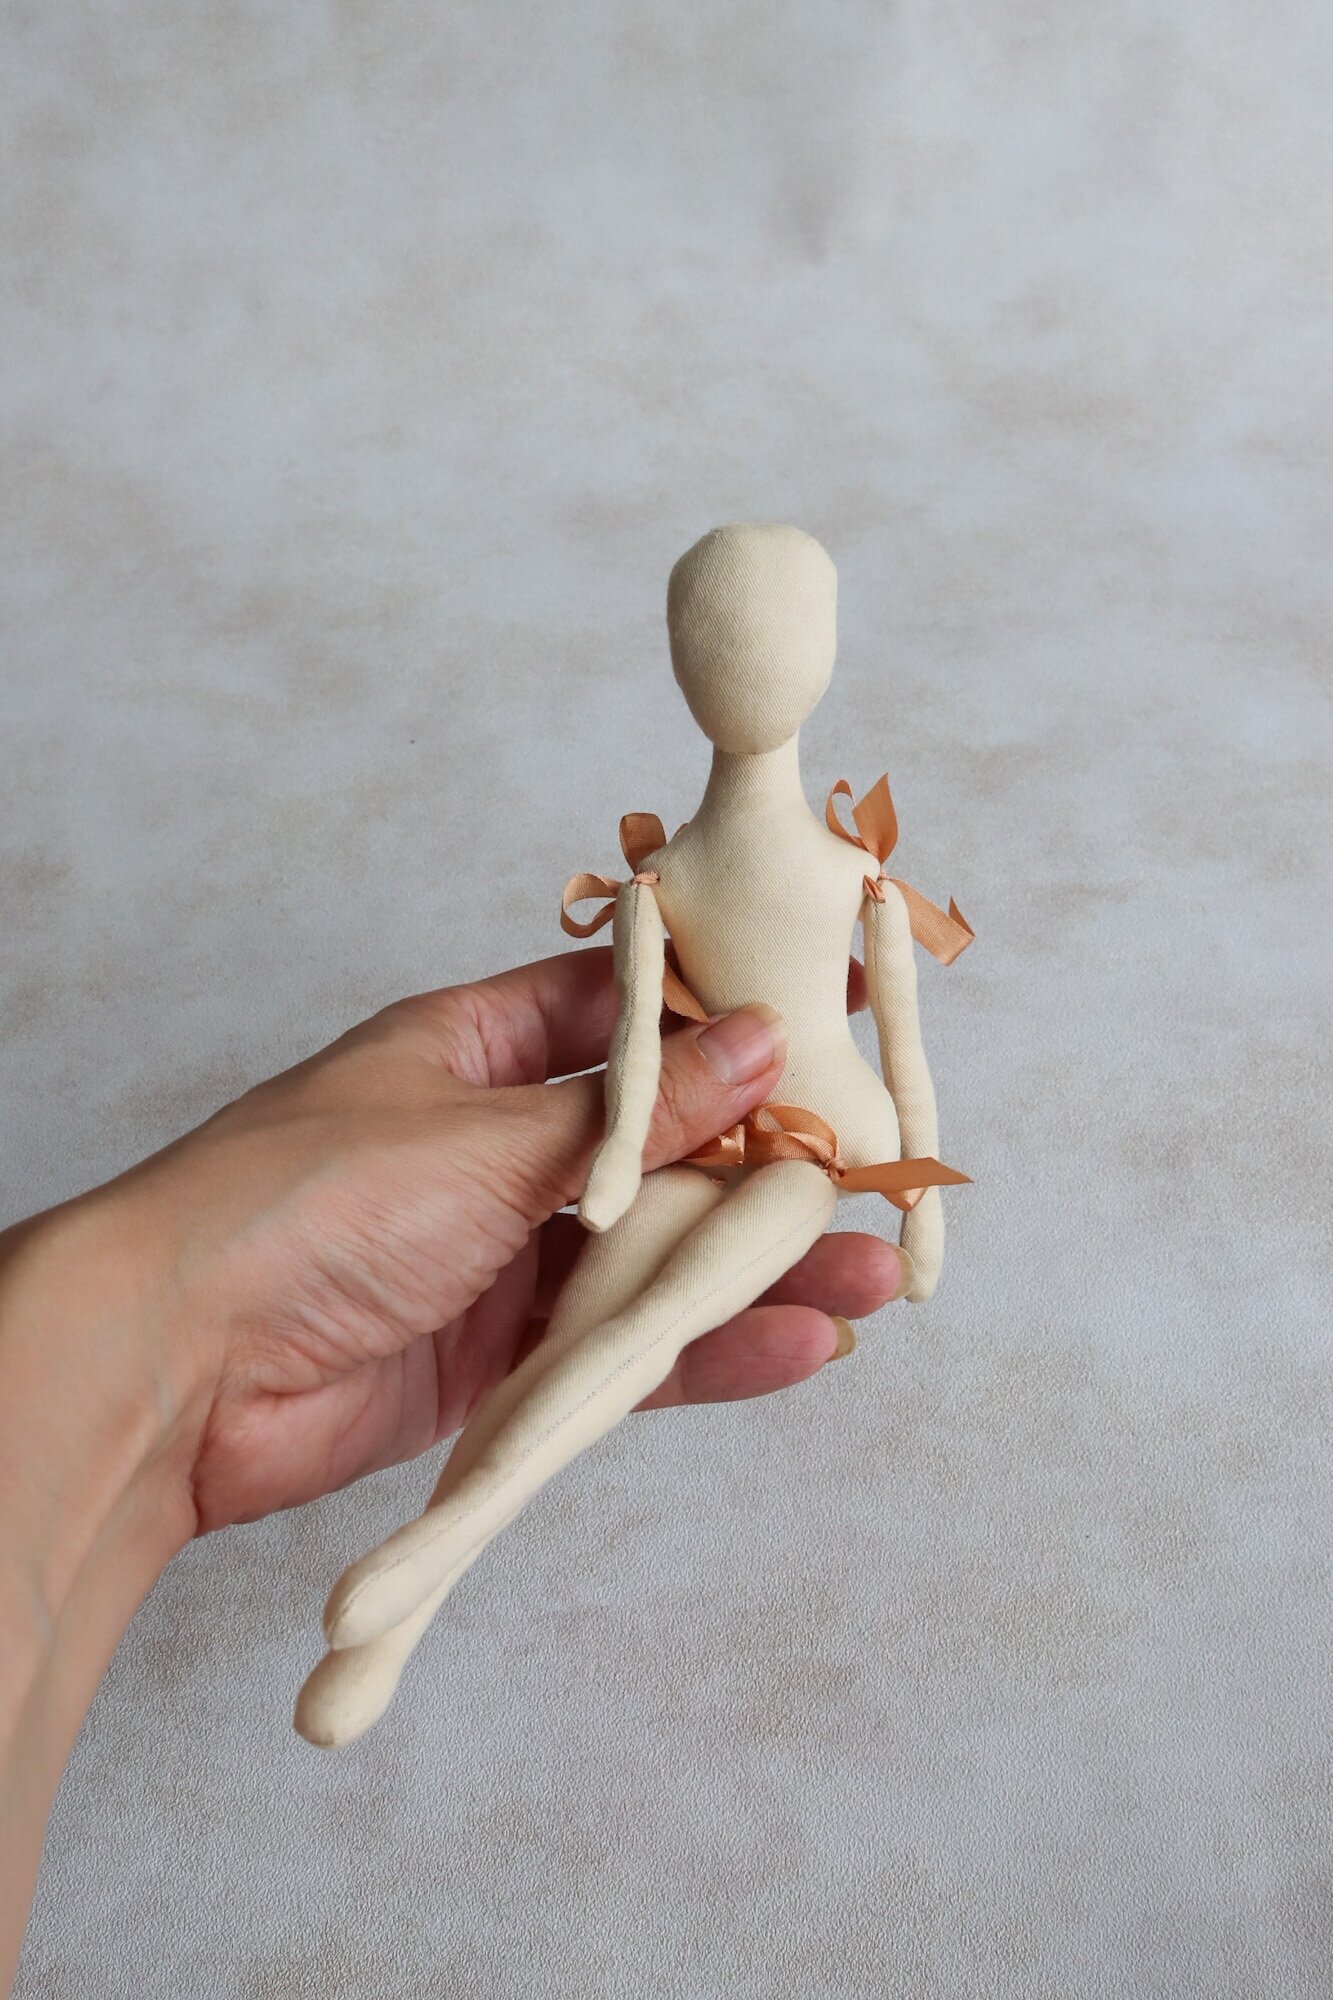 Арин, 24 см. Заготовка интерьерной куклы из текстиля для творчества, рукоделия, хобби